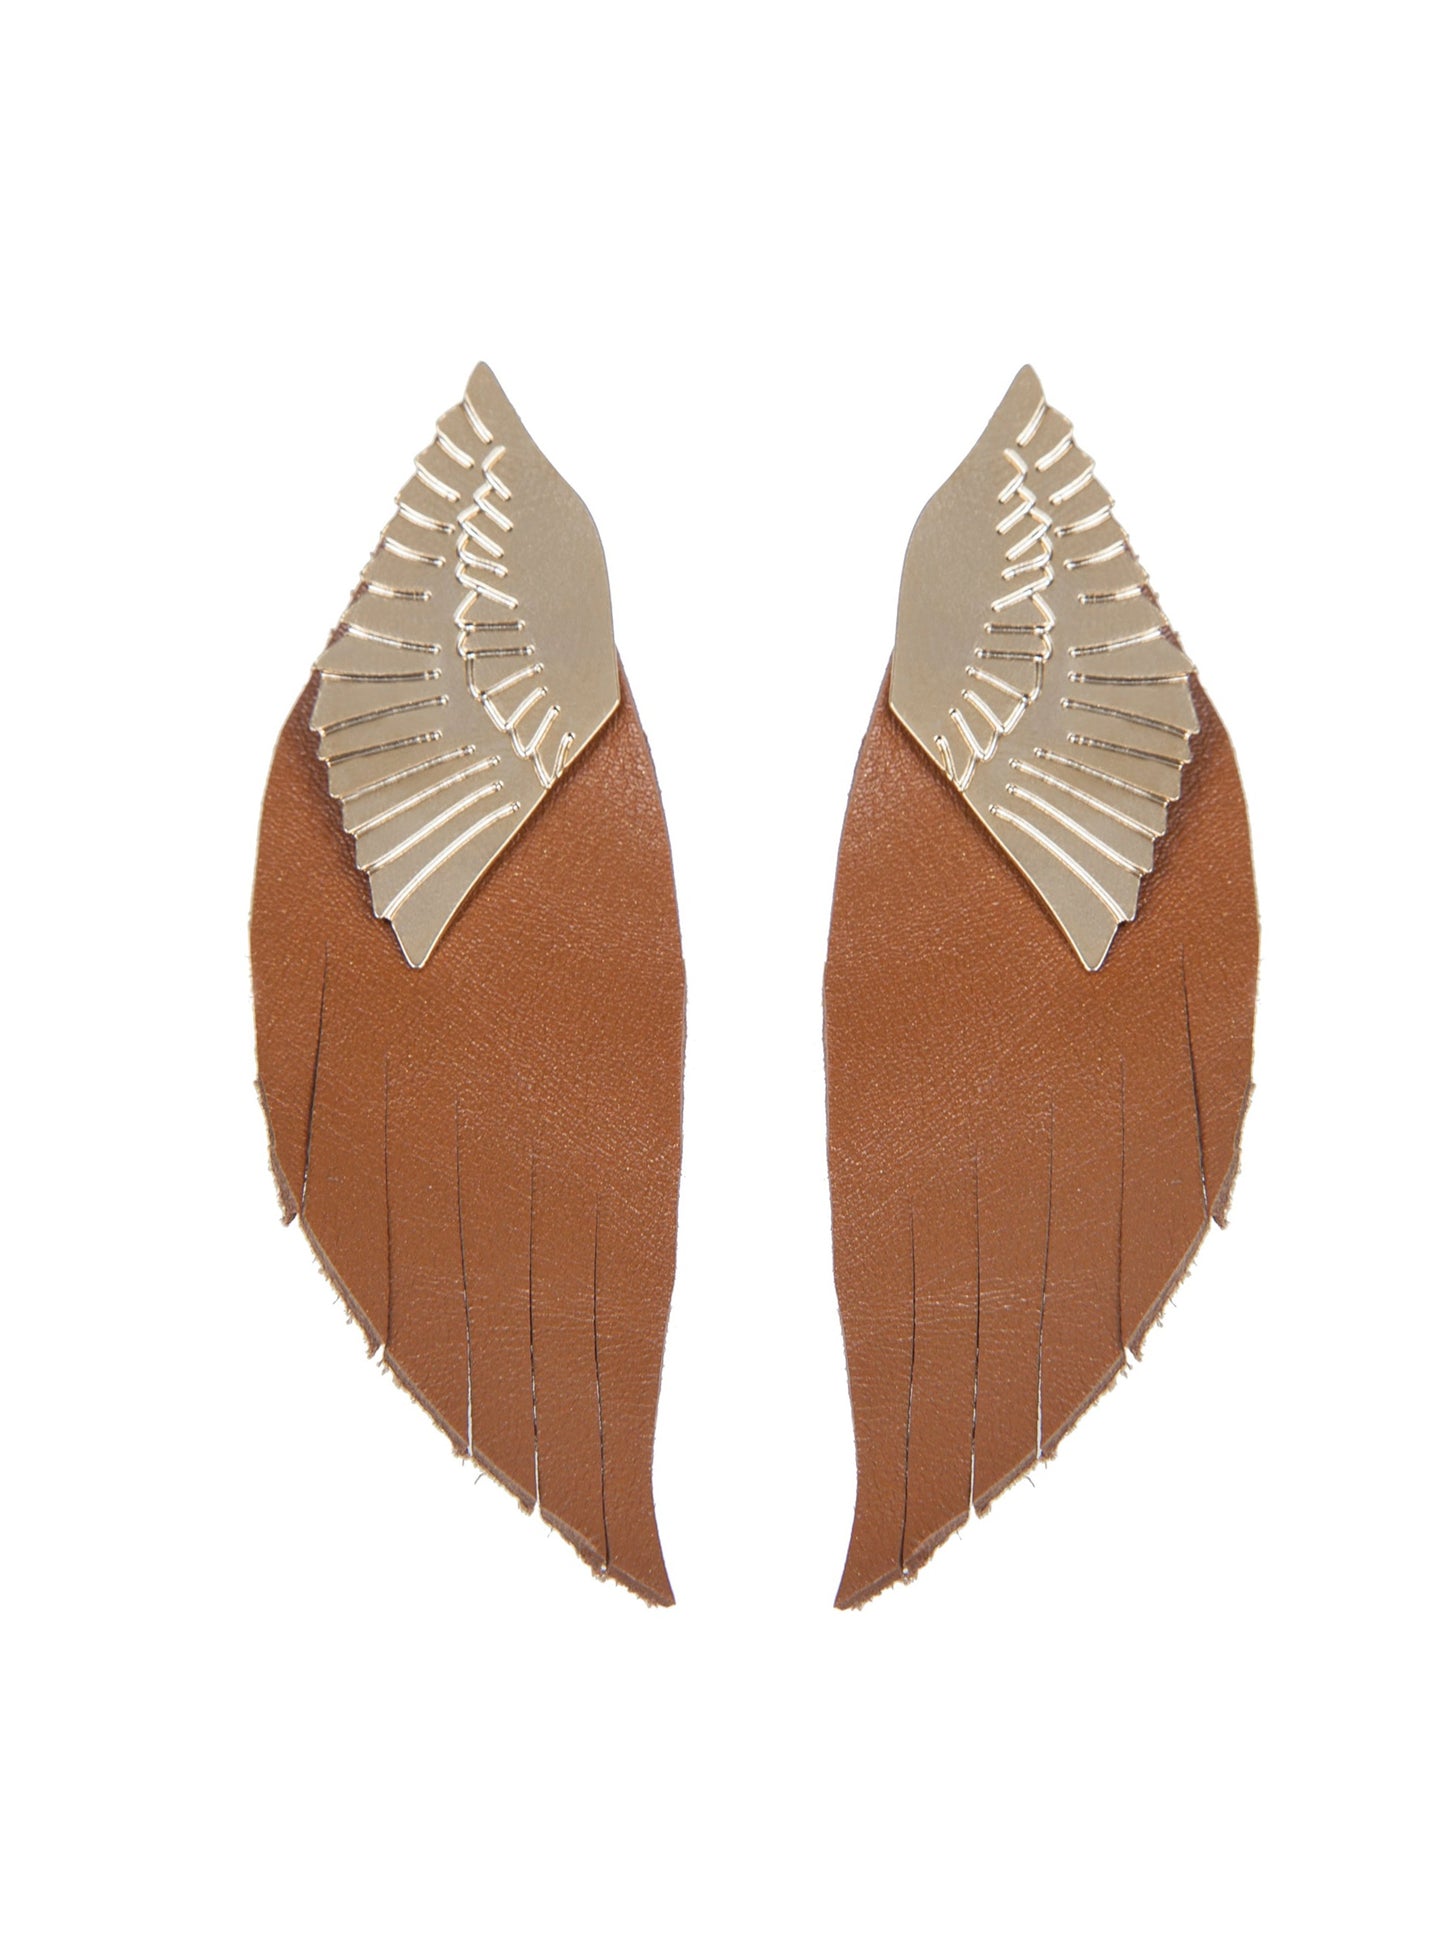 PHOENIX Leather Earrings